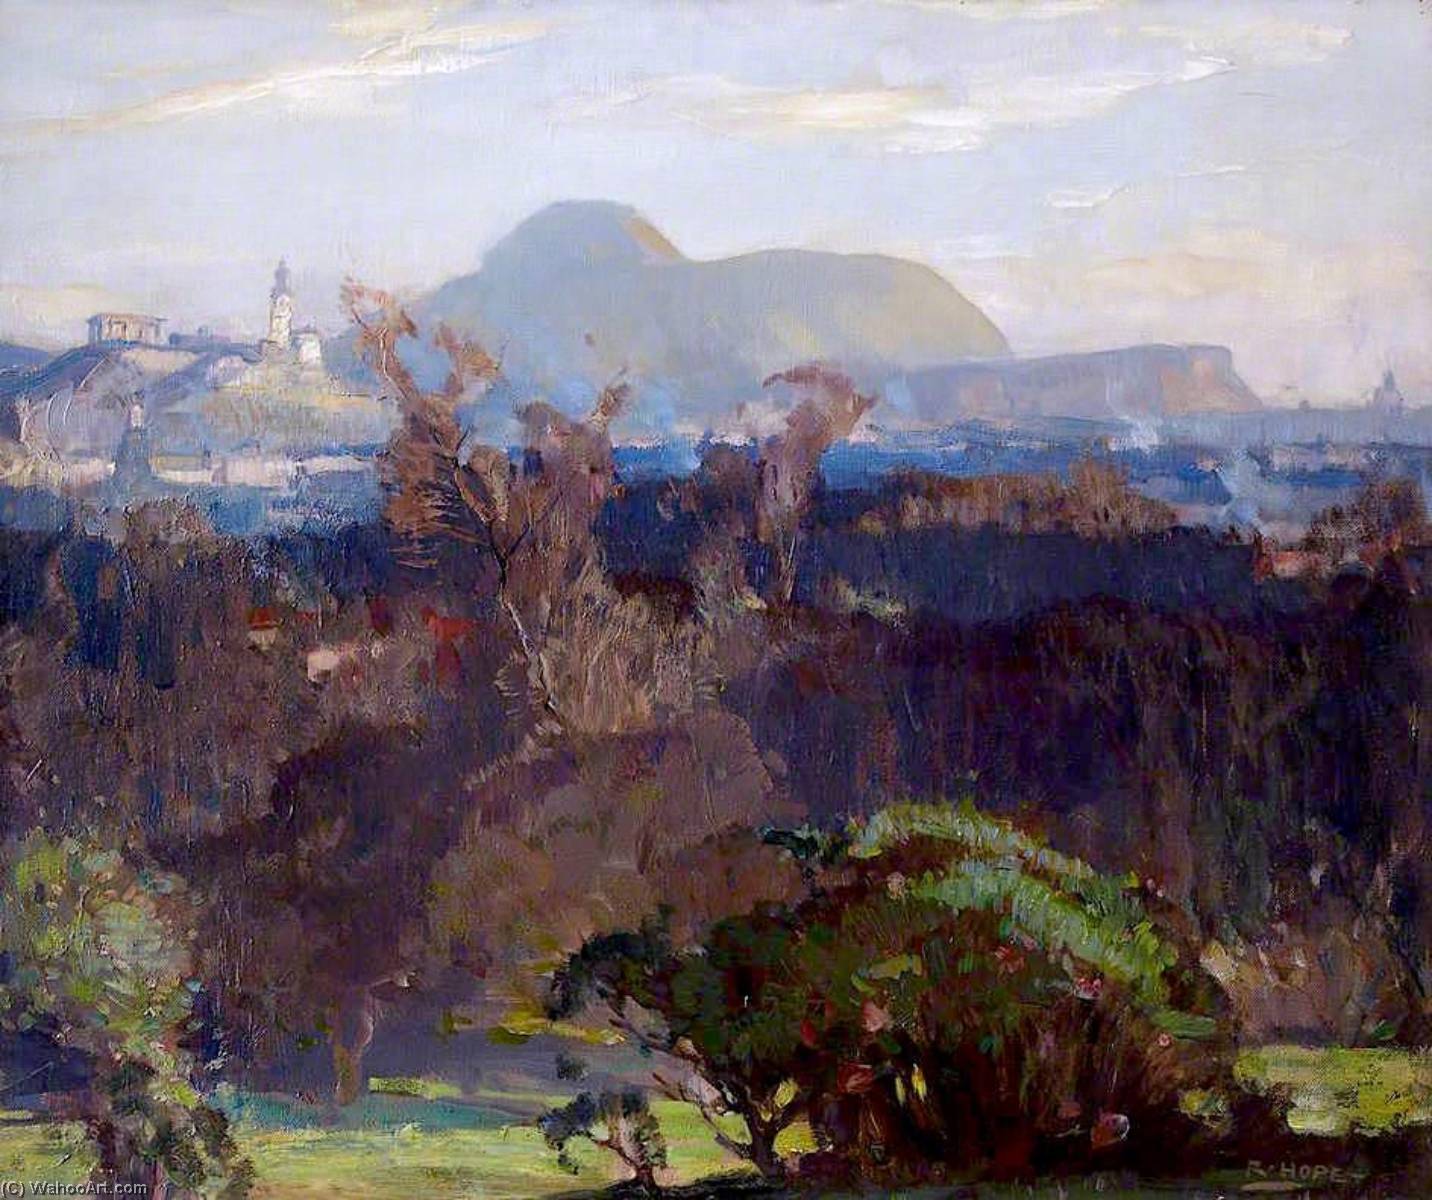 Buy Museum Art Reproductions Edinburgh from the Arboretum by Robert Hope (1869-1936) | ArtsDot.com